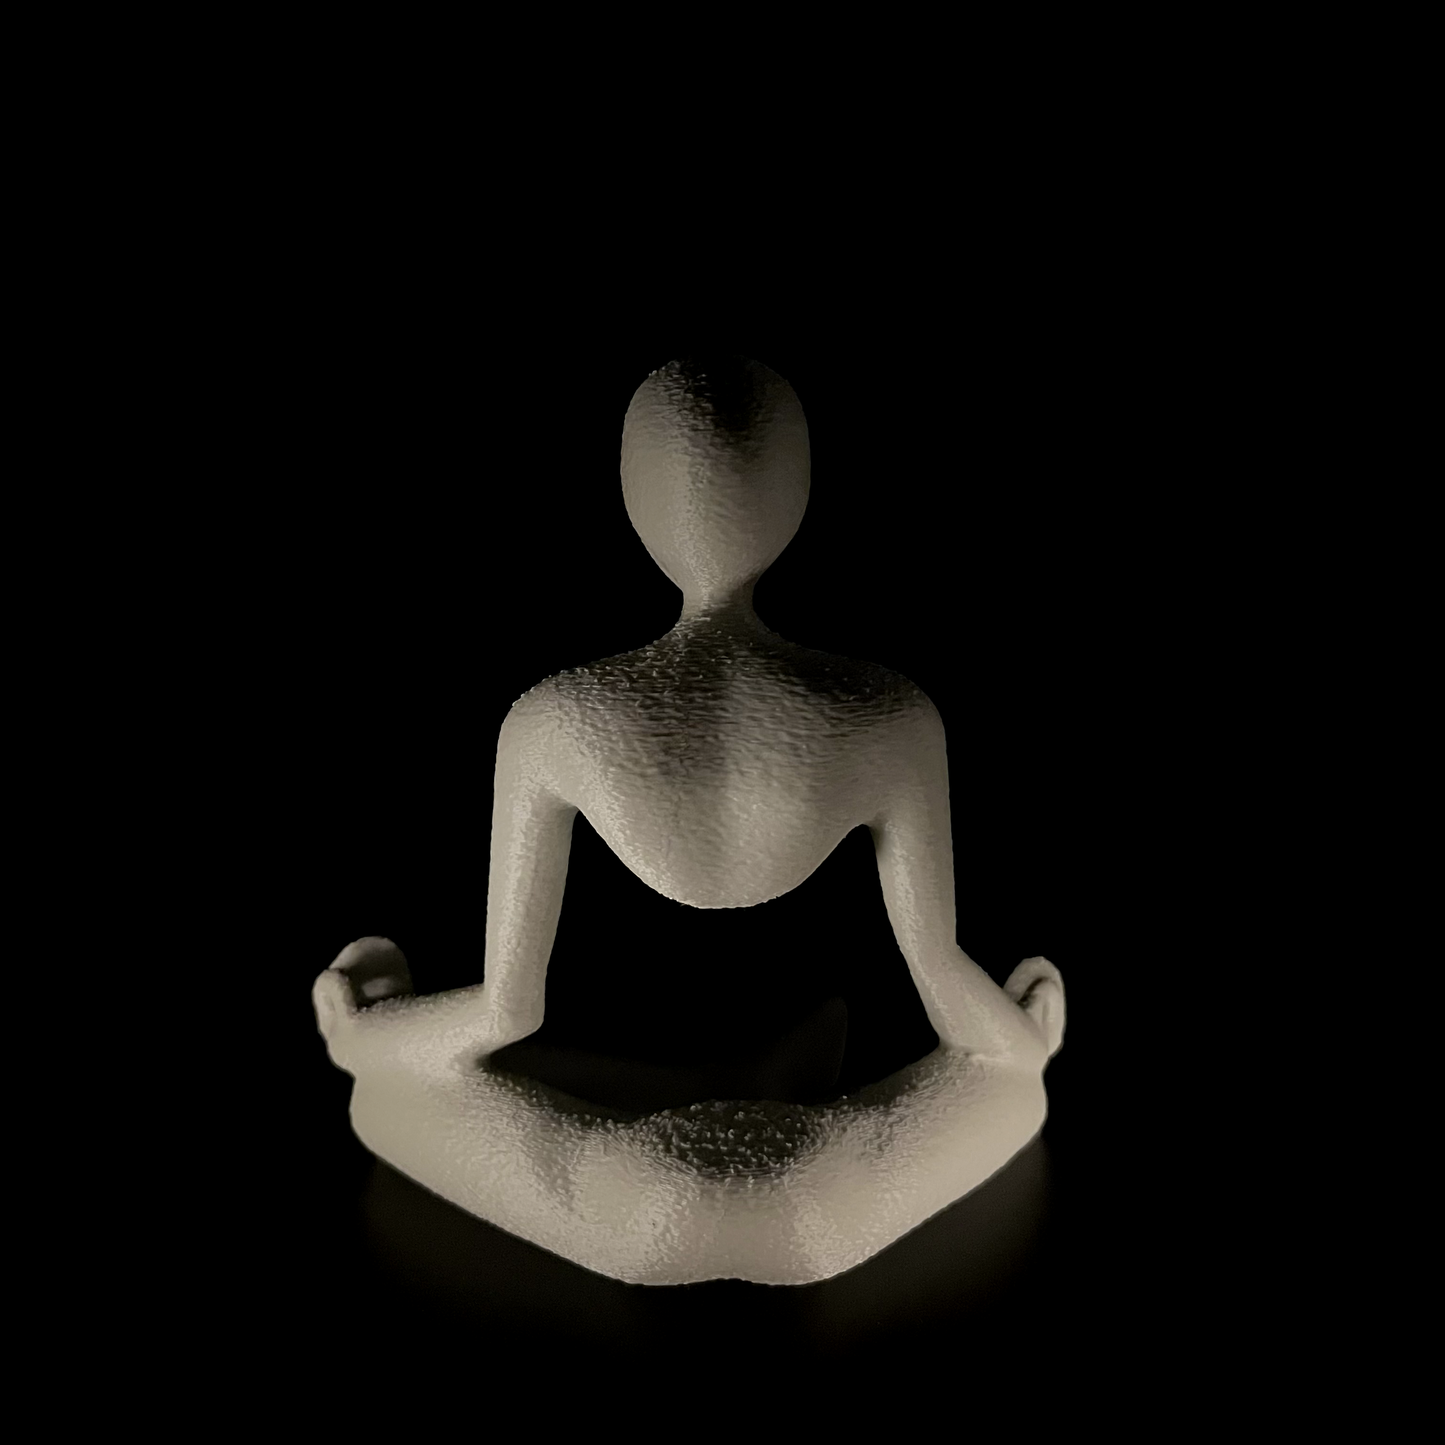 Medito